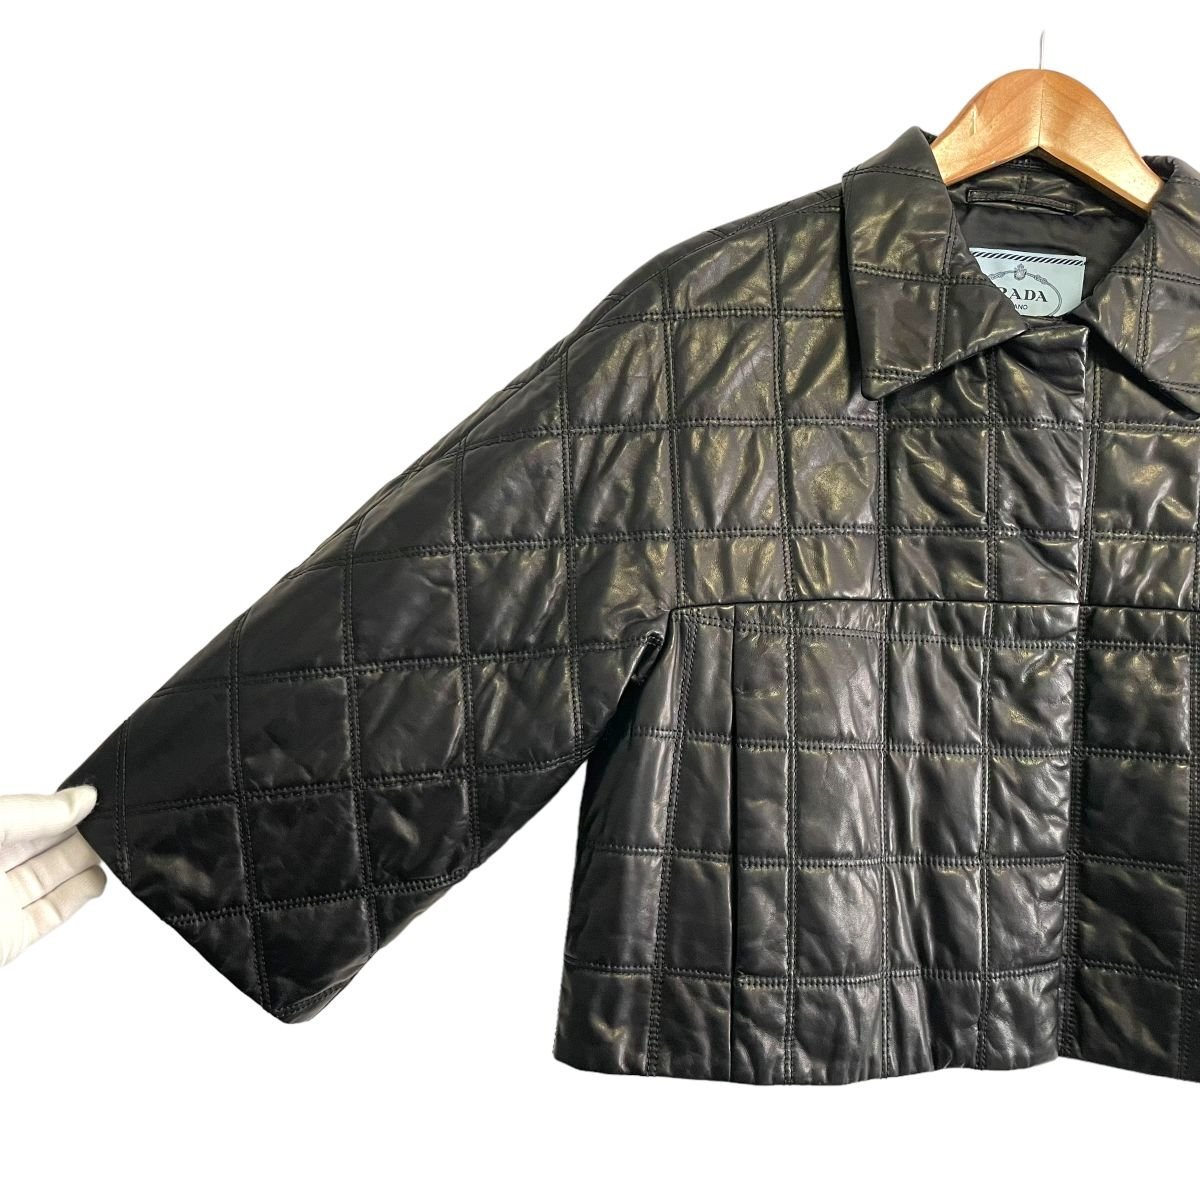  прекрасный товар PRADA Prada овечья кожа короткий стеганная куртка 44 черный *